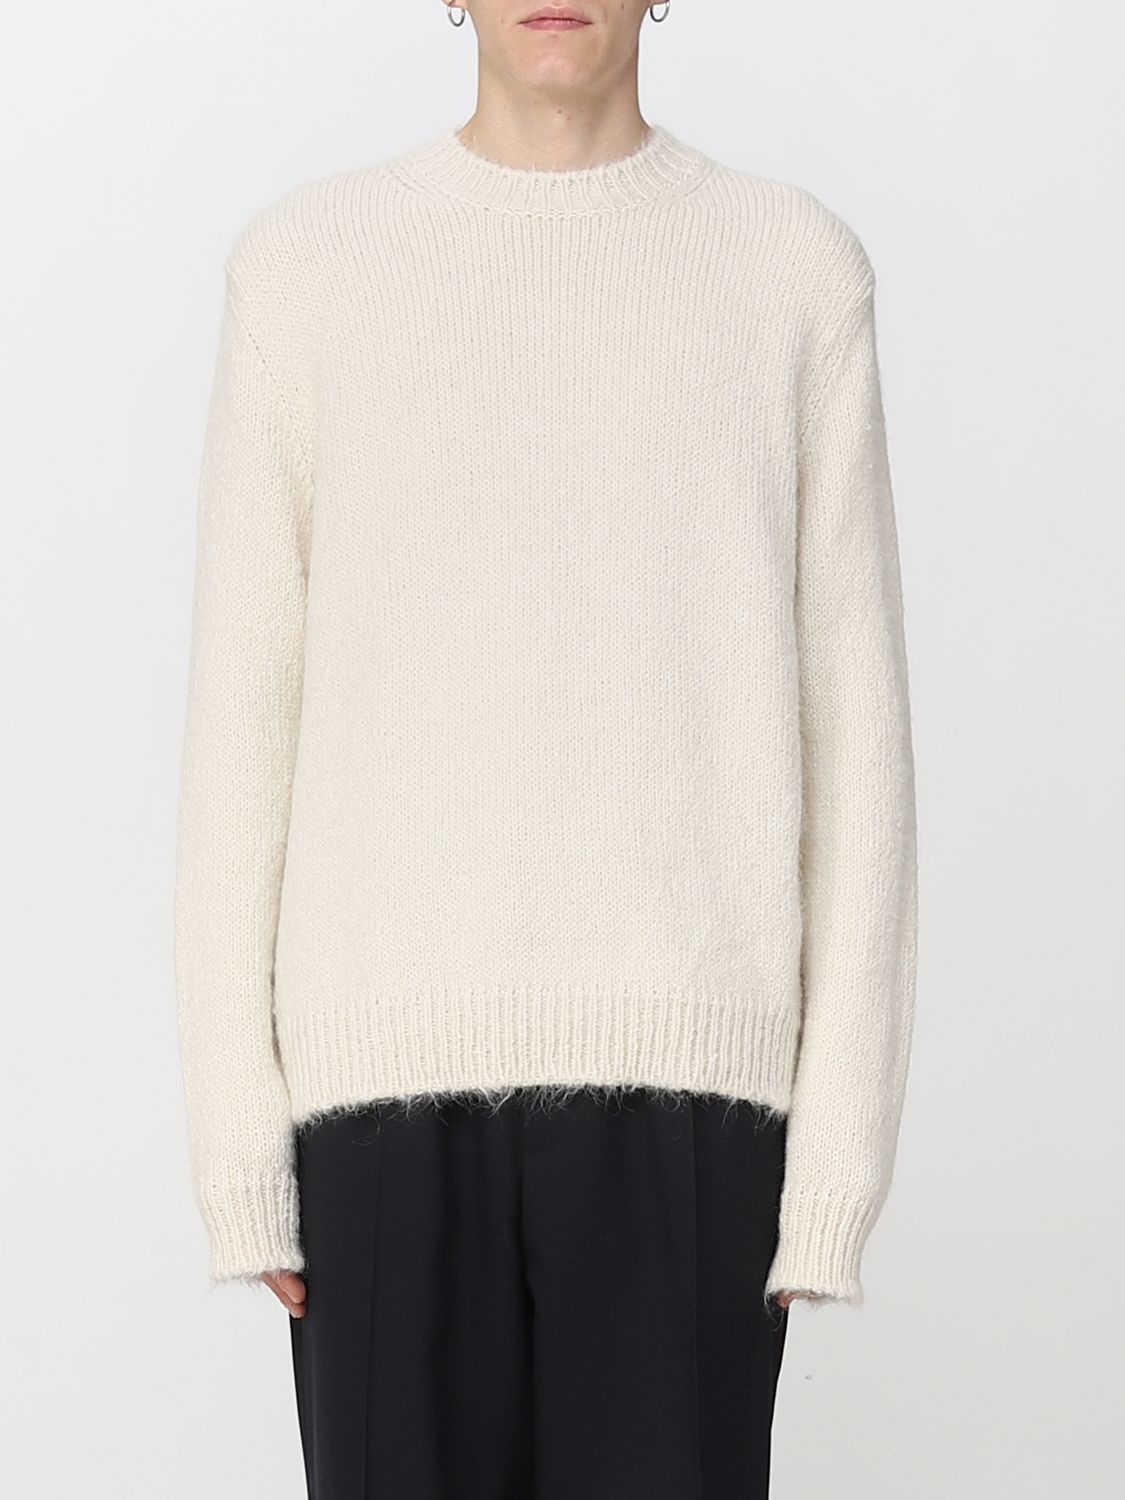 medley Monet uitsterven Jil Sander Outlet: sweater for man - White | Jil Sander sweater  J47GP0021J14523 online on GIGLIO.COM